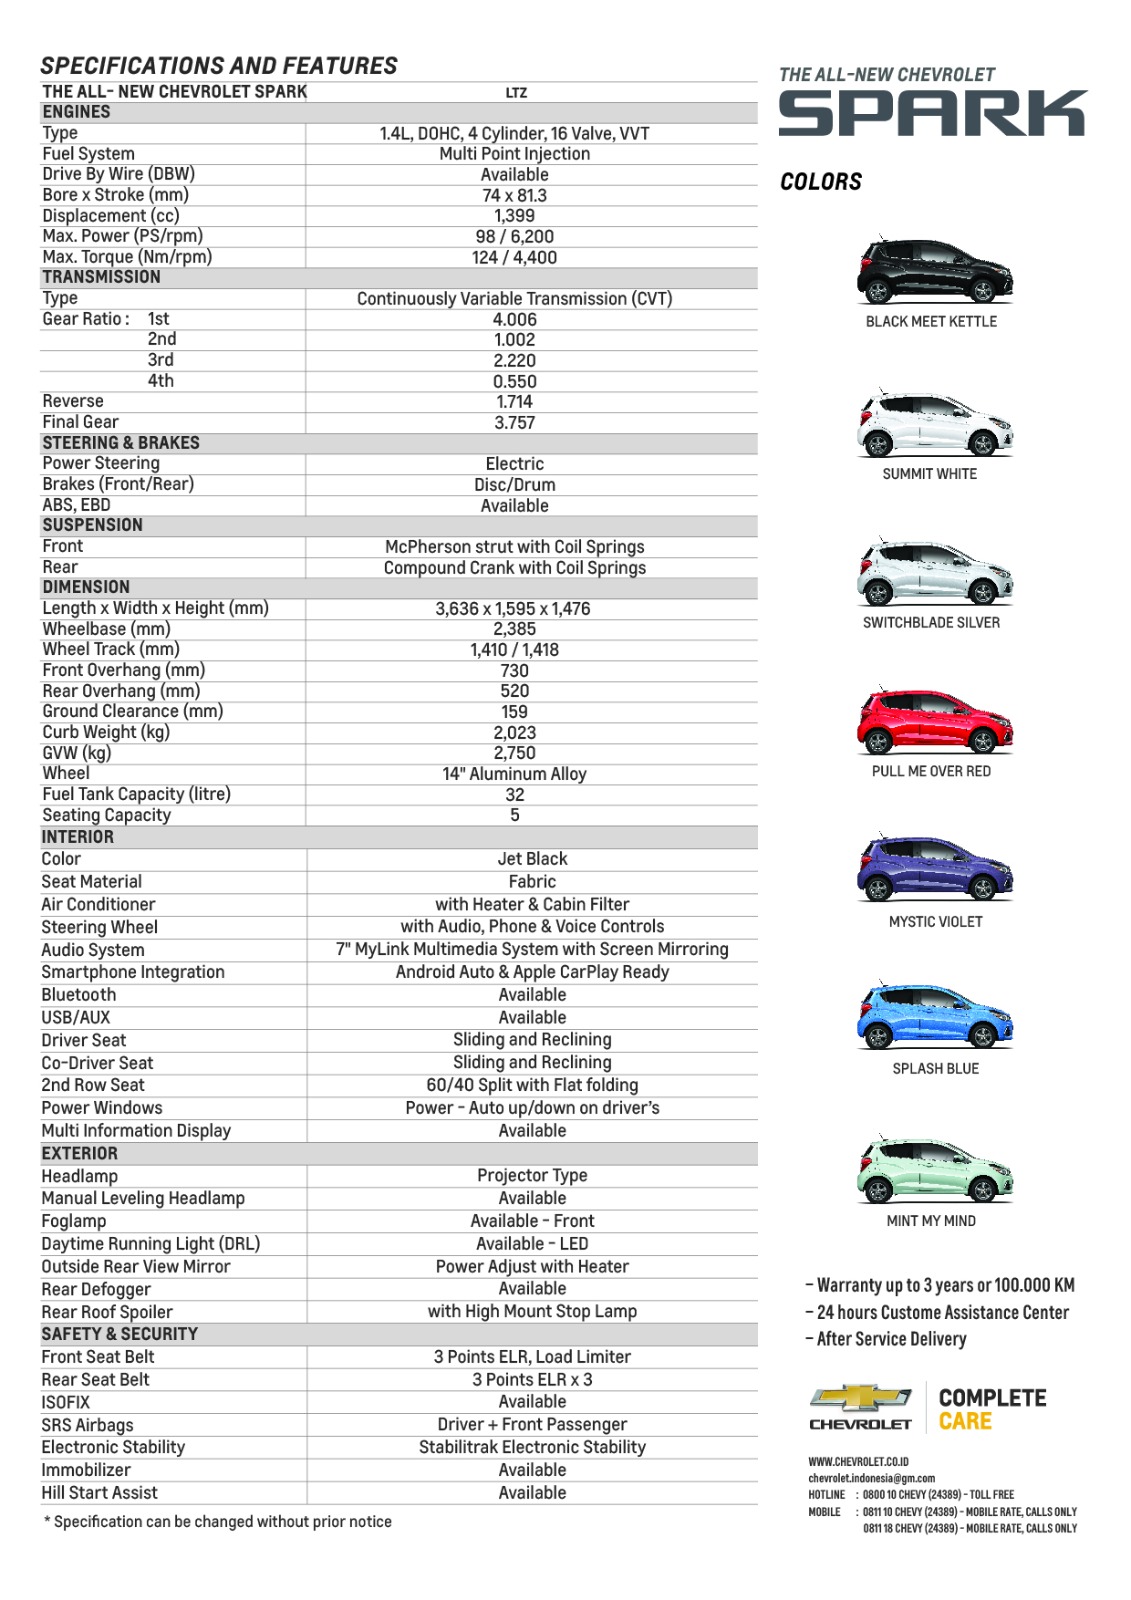 Chevrolet, IMG-20170223-WA0054: All New Chevrolet Trax dan Spark Baru Punya Fitur Yang Cukup Menjanjikan!